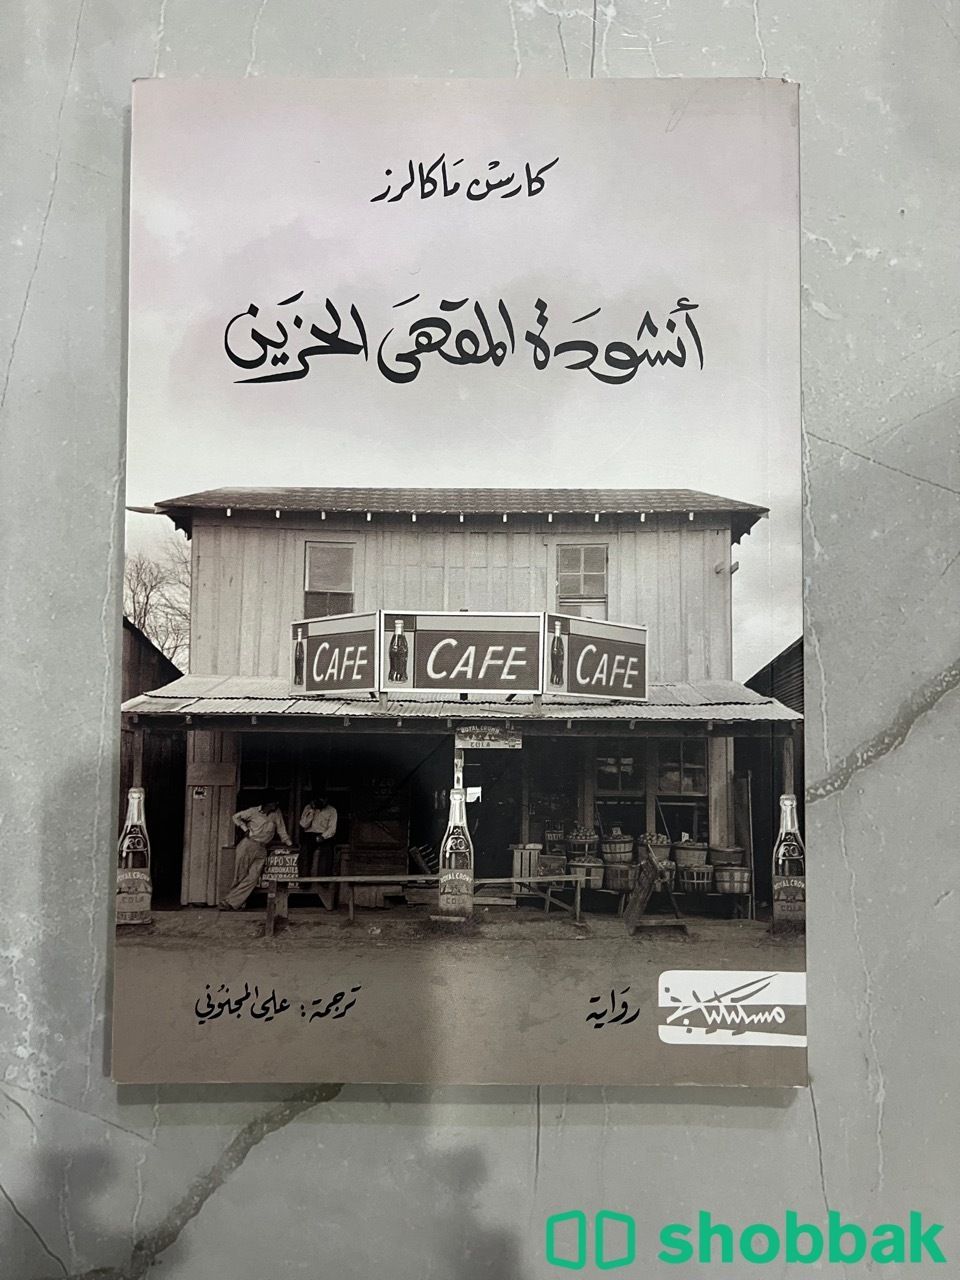 كتاب انشودة المقهى الحزين شباك السعودية